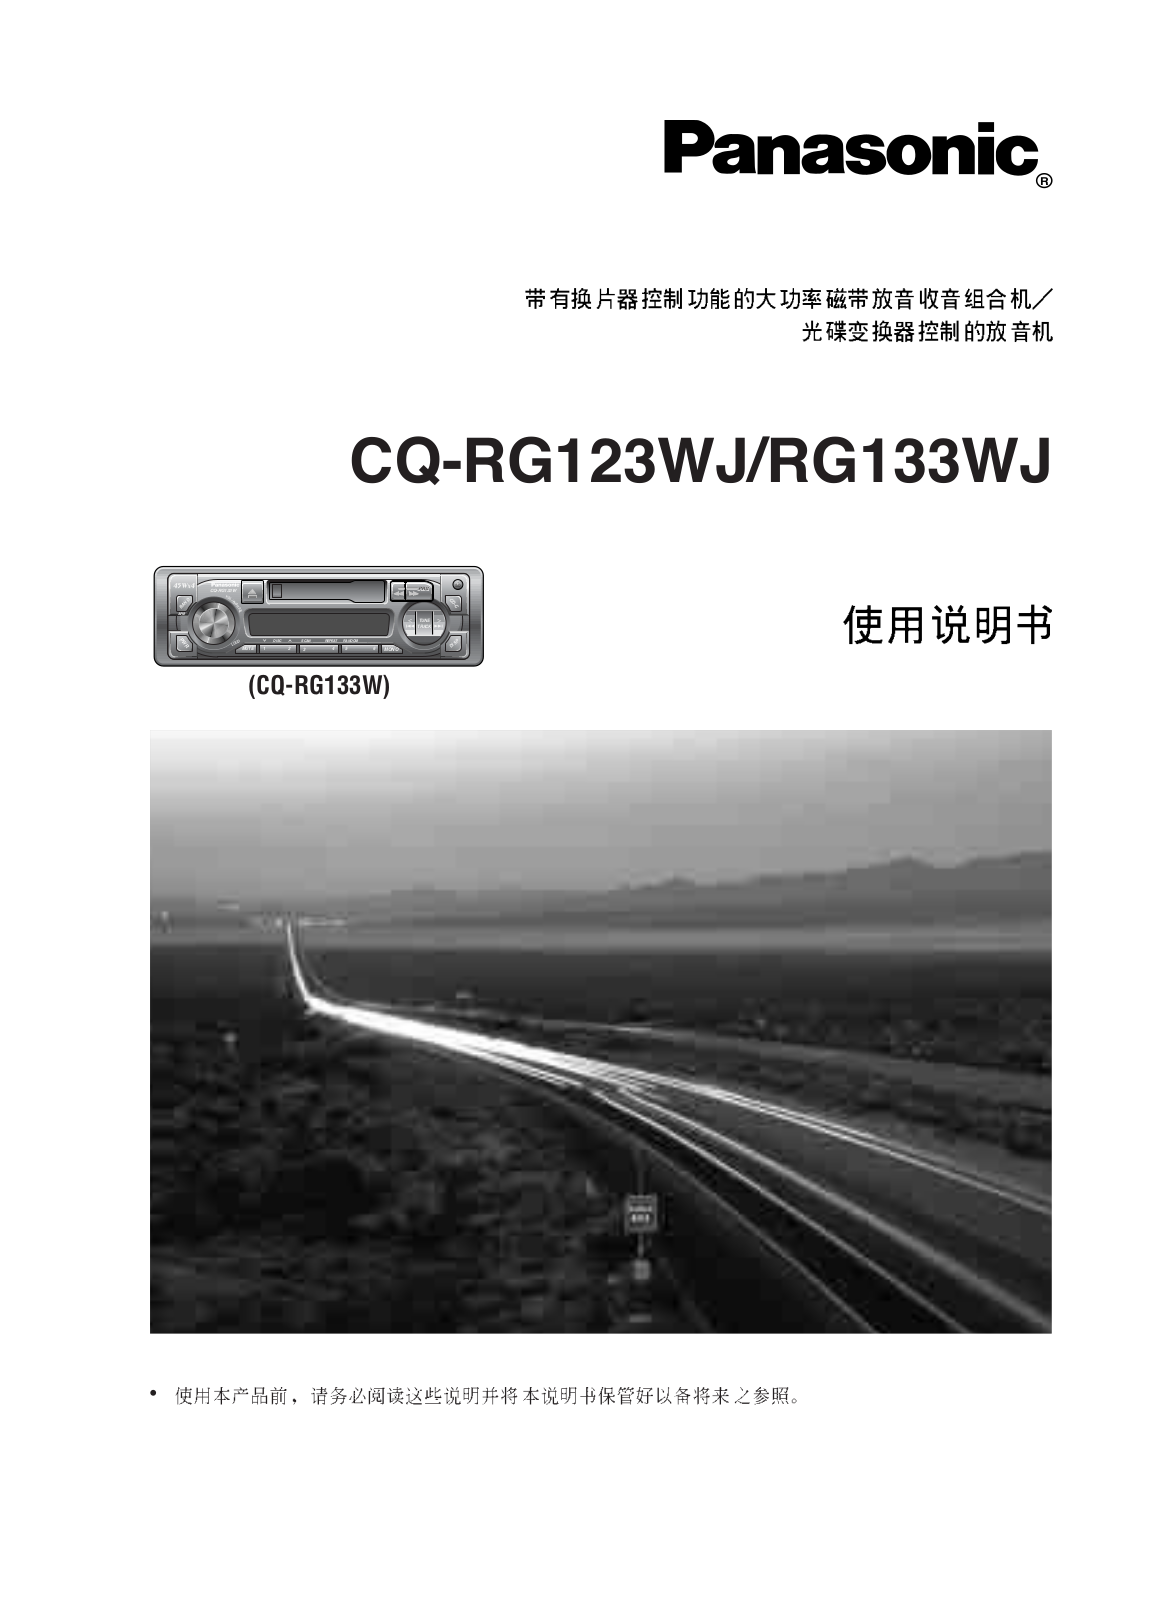 Panasonic CQ-RG133WJ, CQ-RG123WJ User Manual